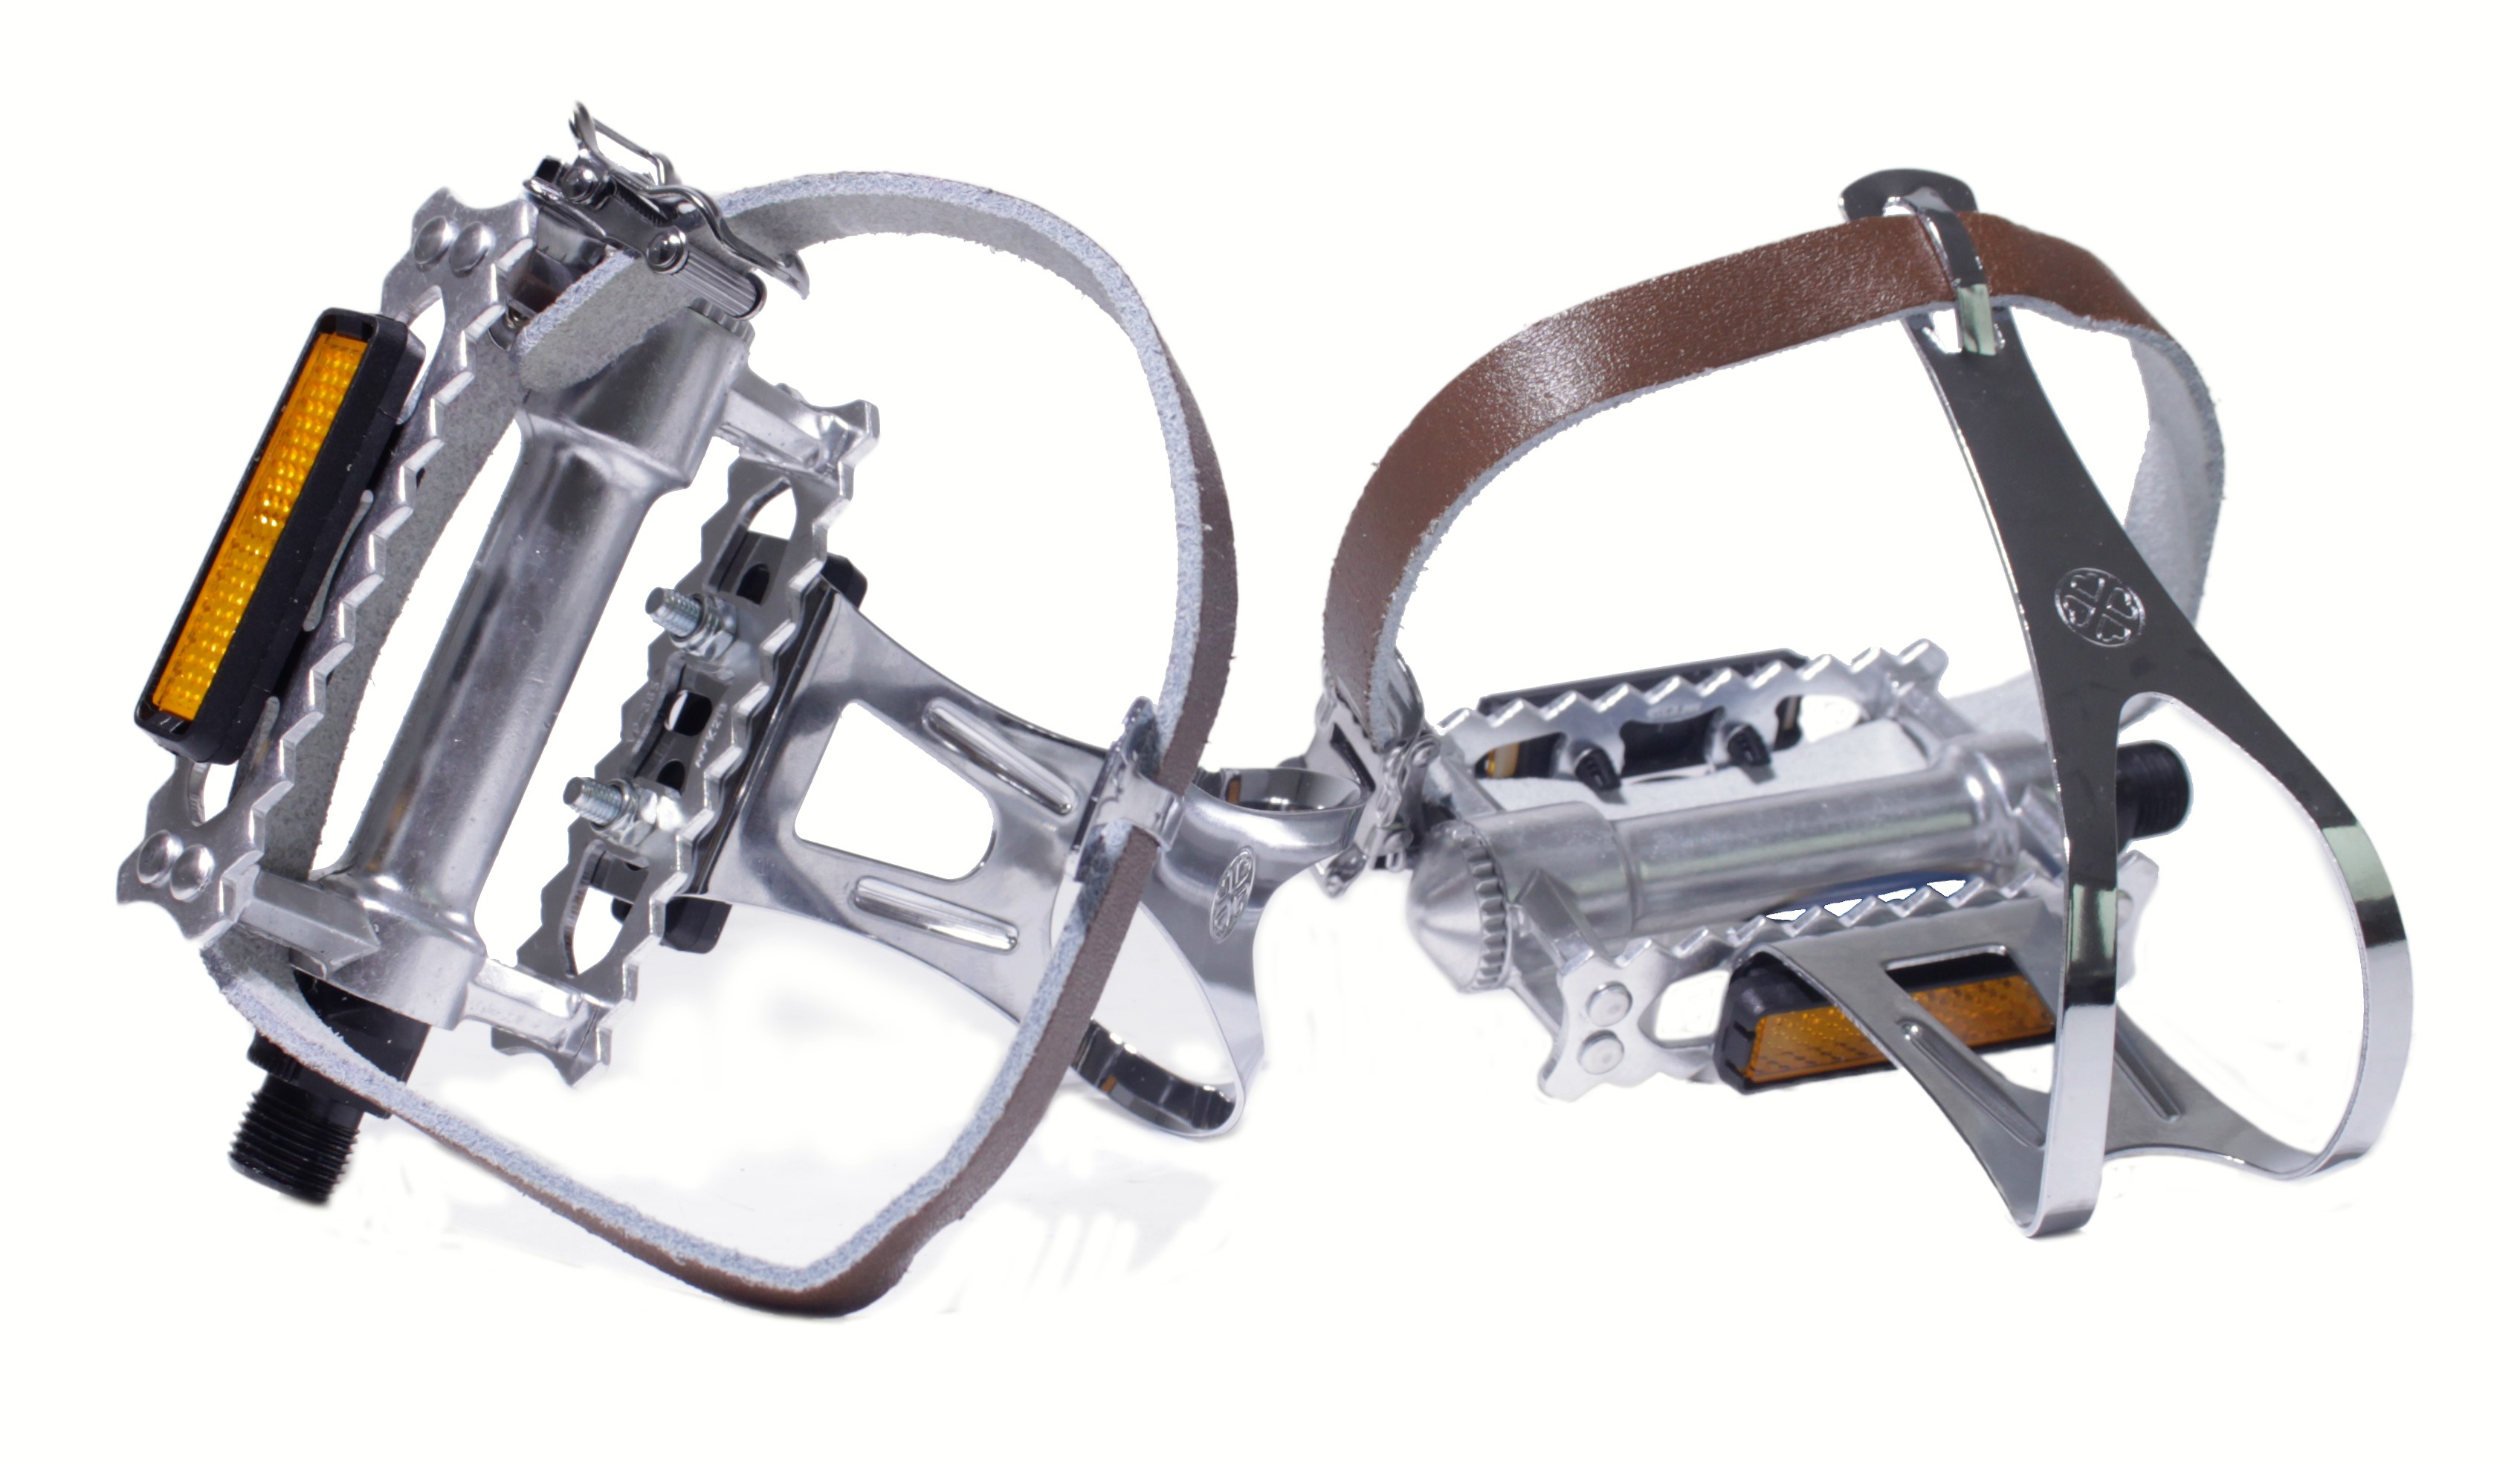 Rat-Trap Sport in alluminio / Pedali da turismo con gancio e cinghie in pelle